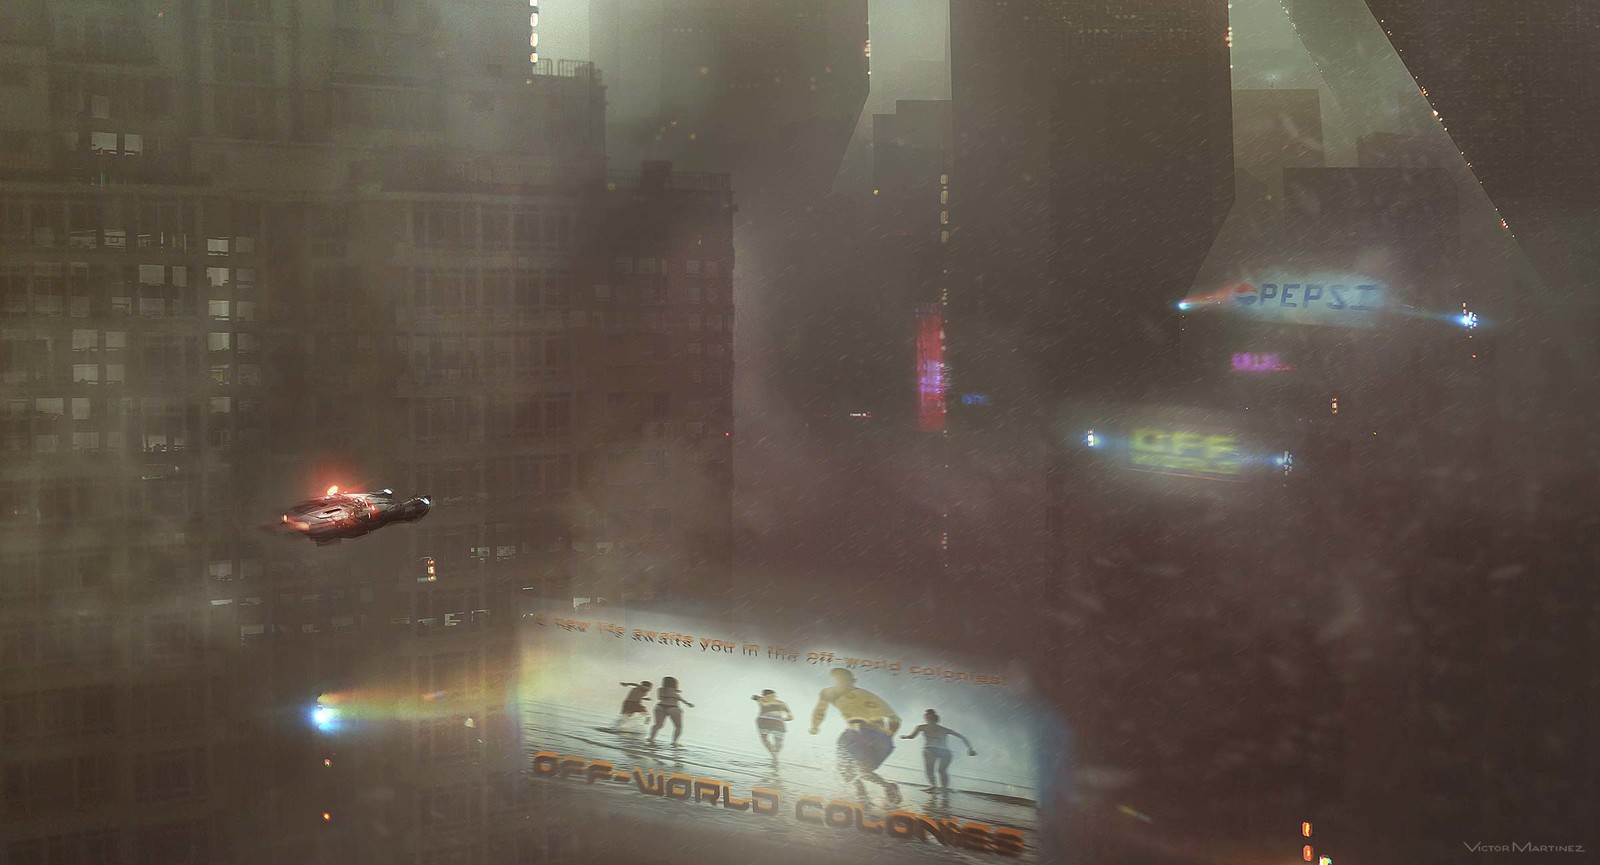 Blade Runner 2049 Concept Art